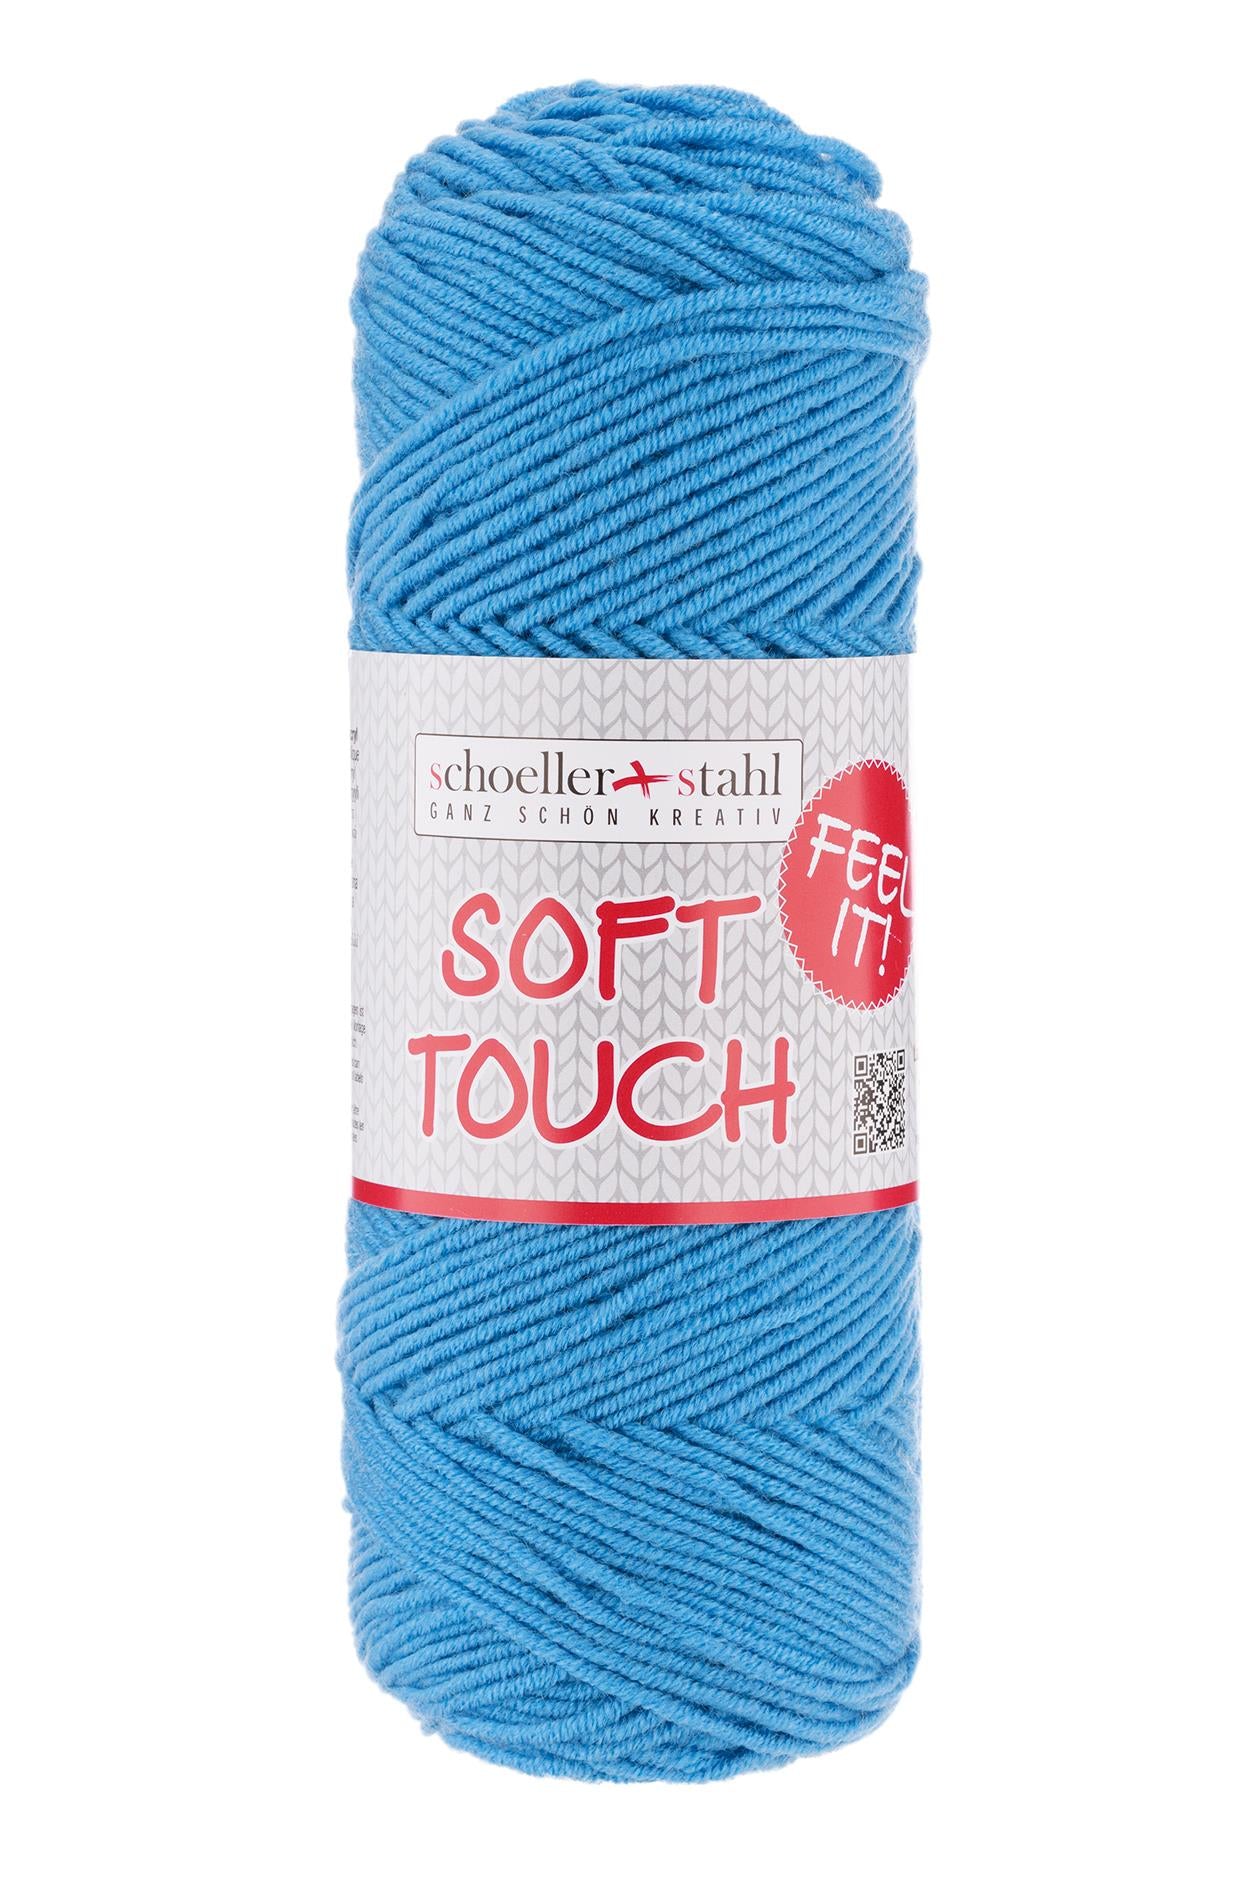 Soft touch 100g pullskin, 90283, Farbe 15, capri